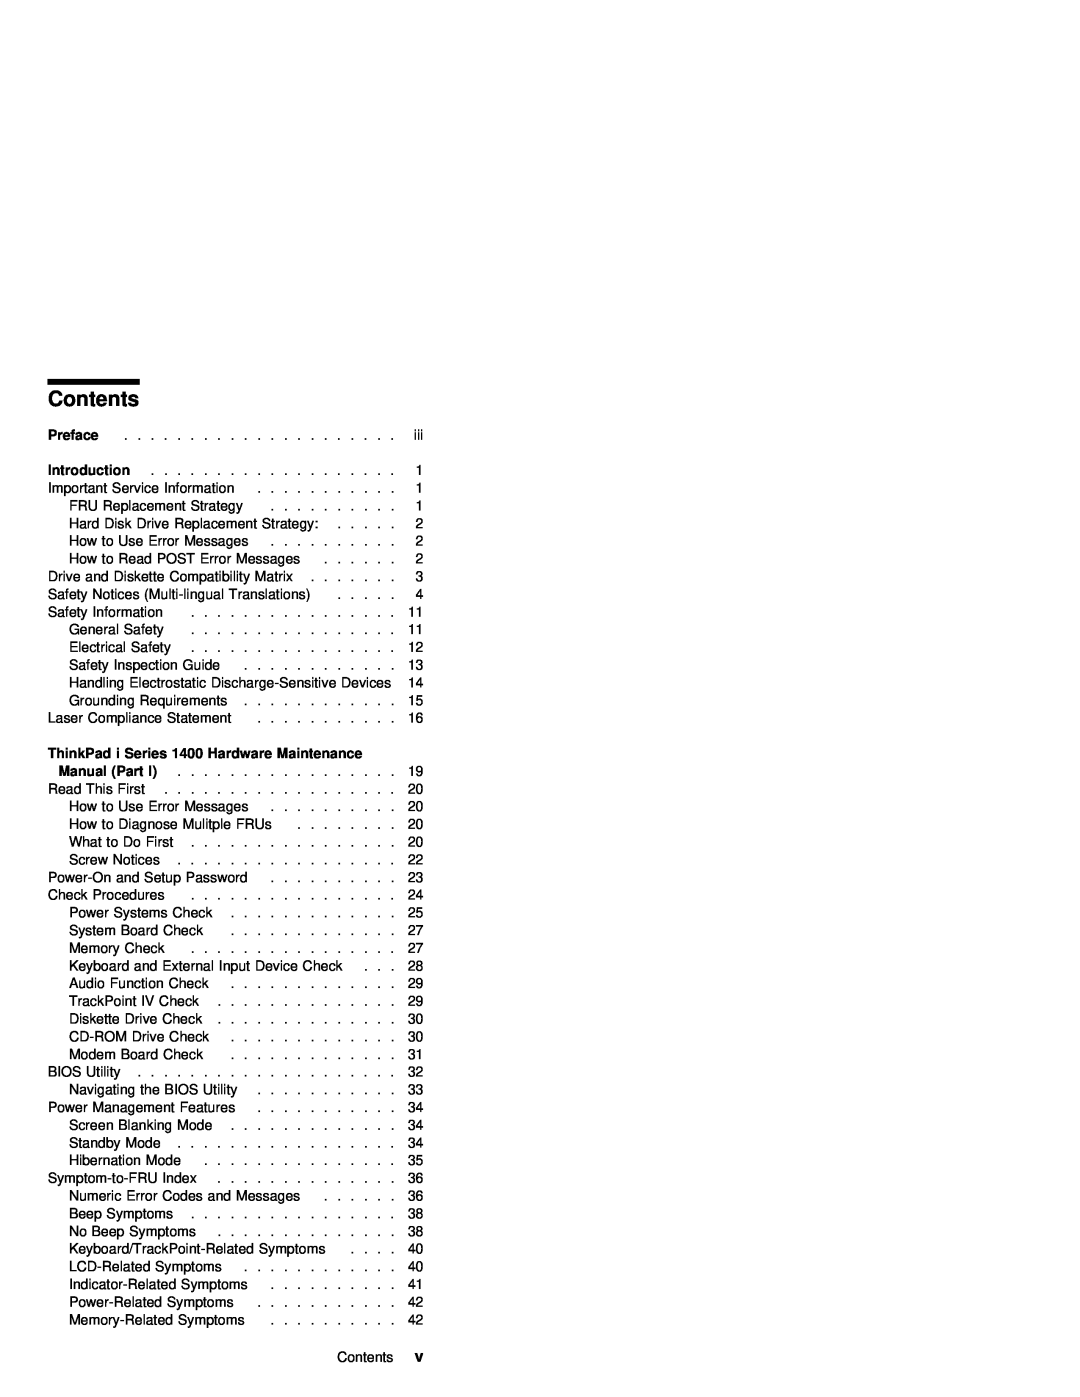 IBM 1400 (2611) manual Contents, Part 